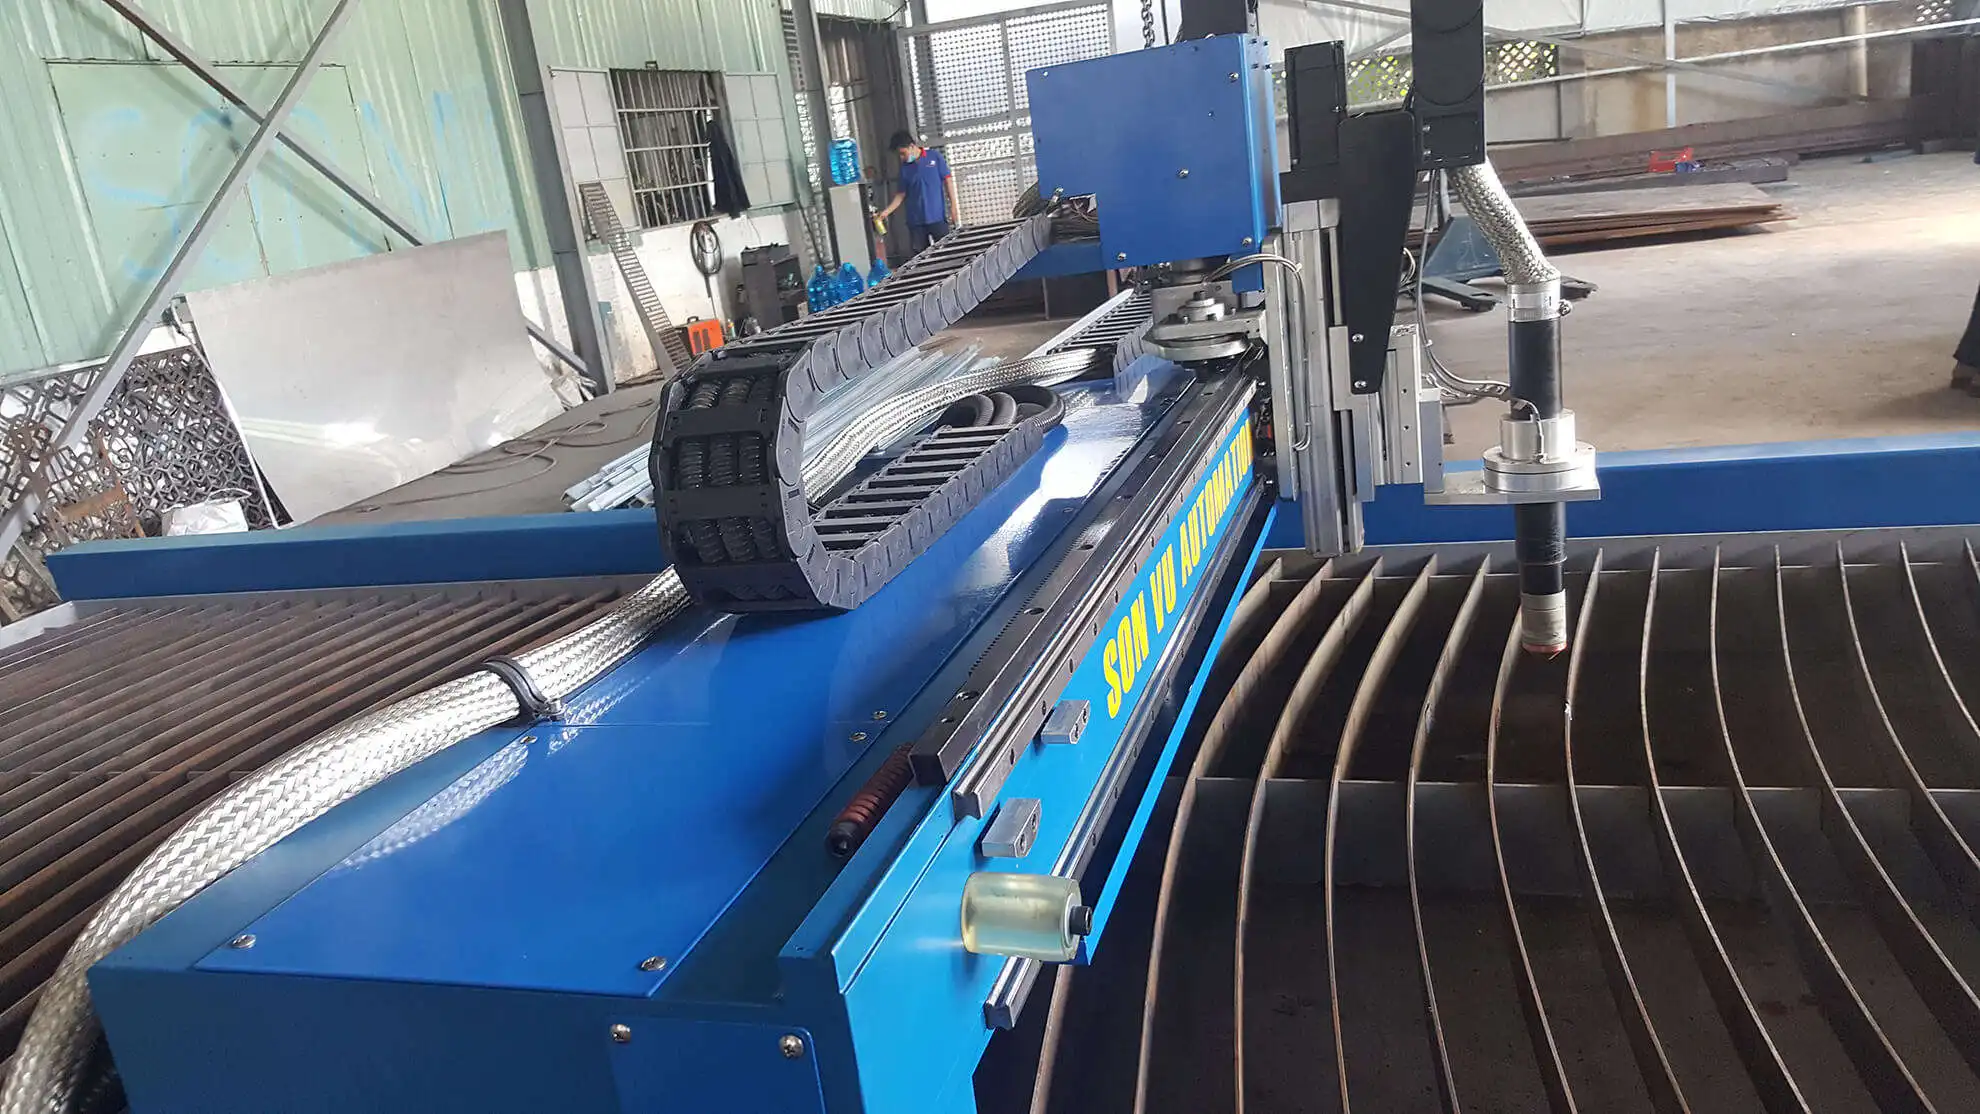 Máy cắt plasma CNC là công nghệ mới trong ngành cơ khí chế tạo. Xem ảnh liên quan để hiểu rõ hơn về máy cắt này và cách nó hoạt động để tạo ra sản phẩm chất lượng cao.